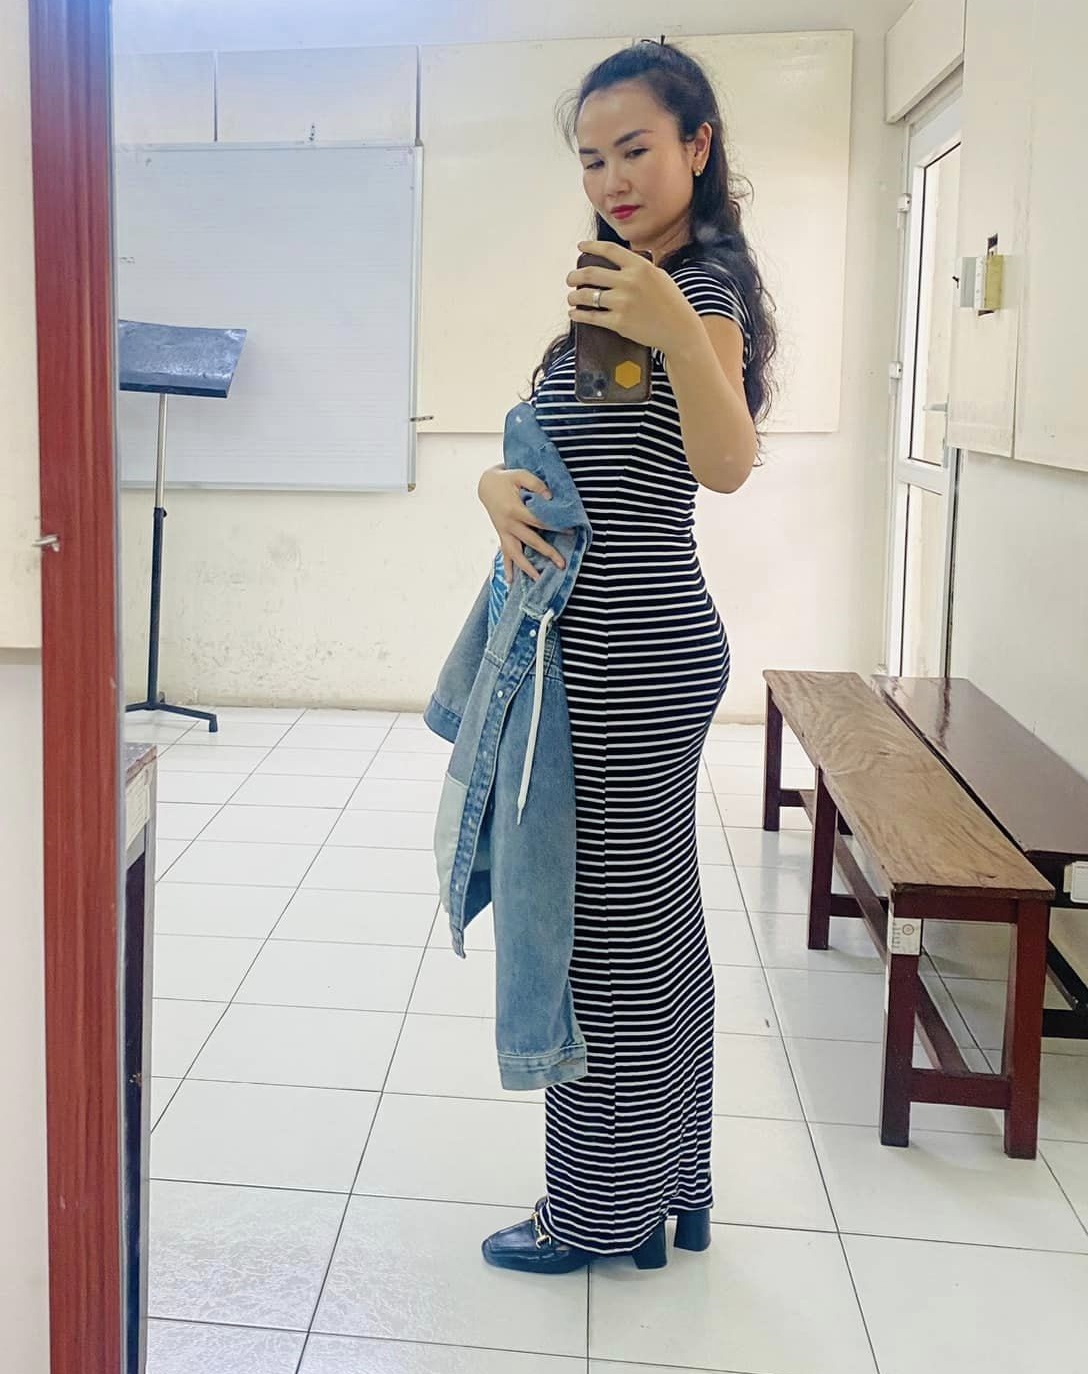 Võ Hạ Trâm hé lộ vóc dáng ở tháng thứ 4 thai kỳ, netizen đặc biệt chú ý một chi tiết ở bụng bầu - ảnh 2